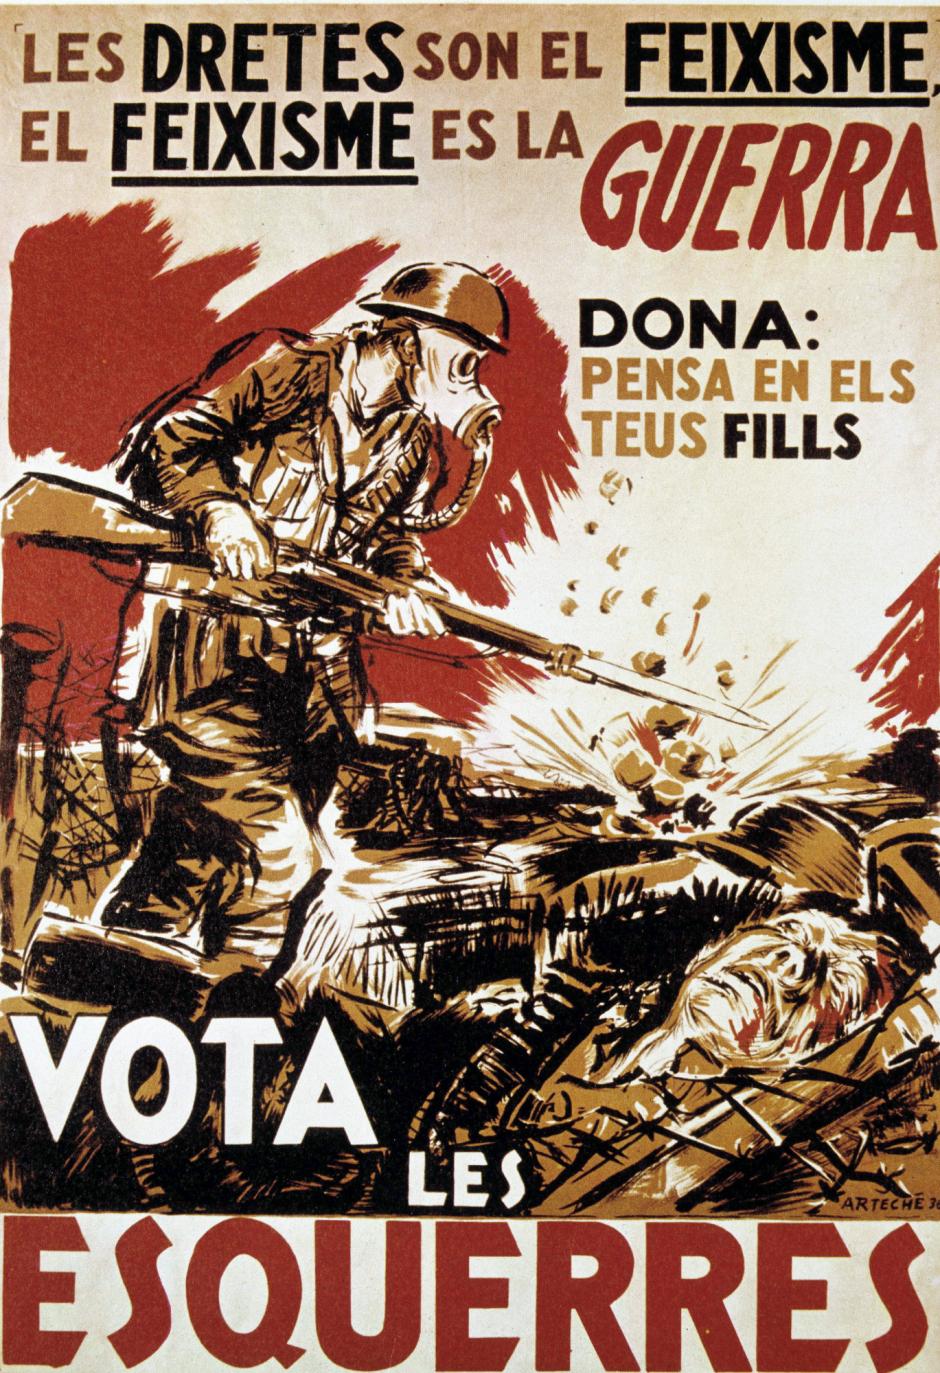 Cartel propagandístico durante la Guerra Civil. Se puede leer: 'Vota les esquerres'